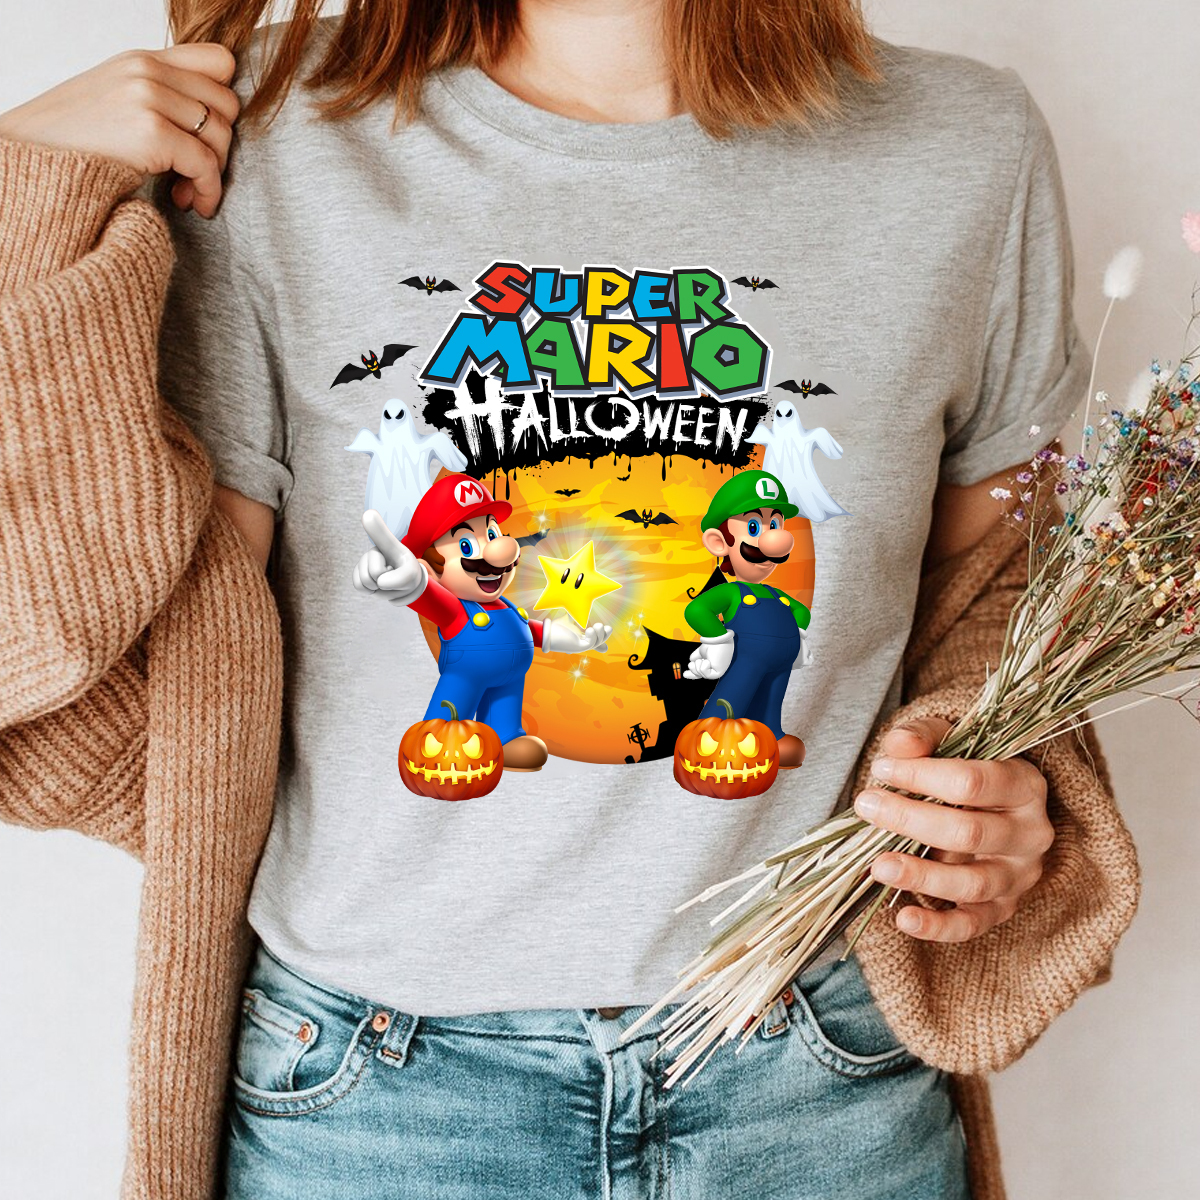 Super Mario Halloween Family Shirt, Super Mario Family Custom Shirt,Family Matching Shirts, Family Halloween Costume, Group Halloween Shirts